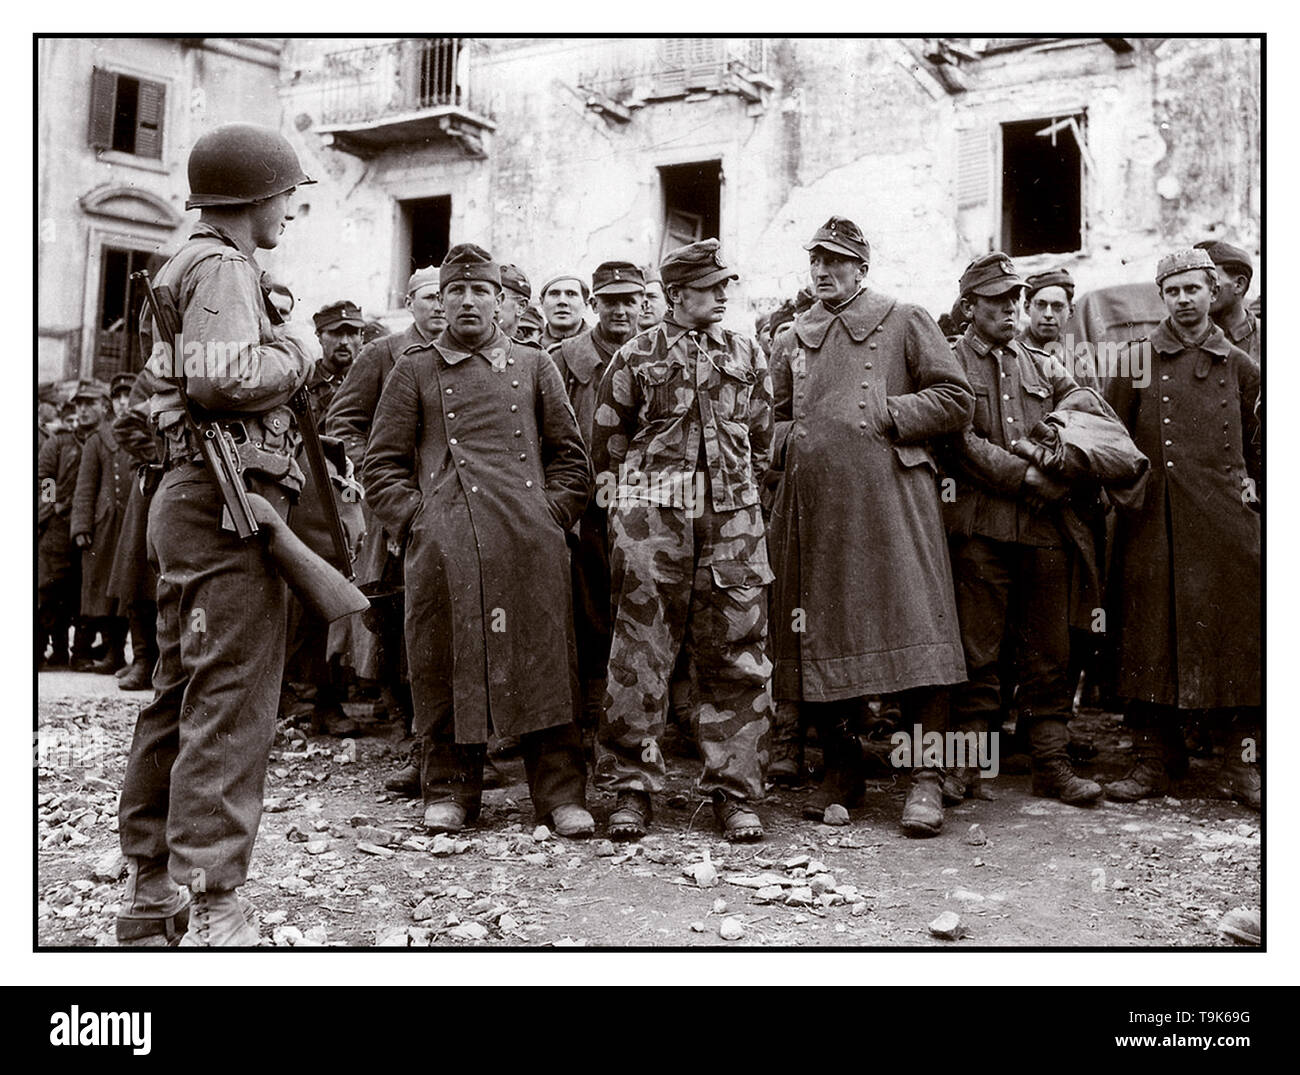 WW2 Archive armée allemande de la Seconde Guerre mondiale prisonniers groupe disparate de la Wehrmacht en uniforme de l'armée allemande détenus gardés par un jeune soldat GI américain à Anzio Italie 1944 Banque D'Images